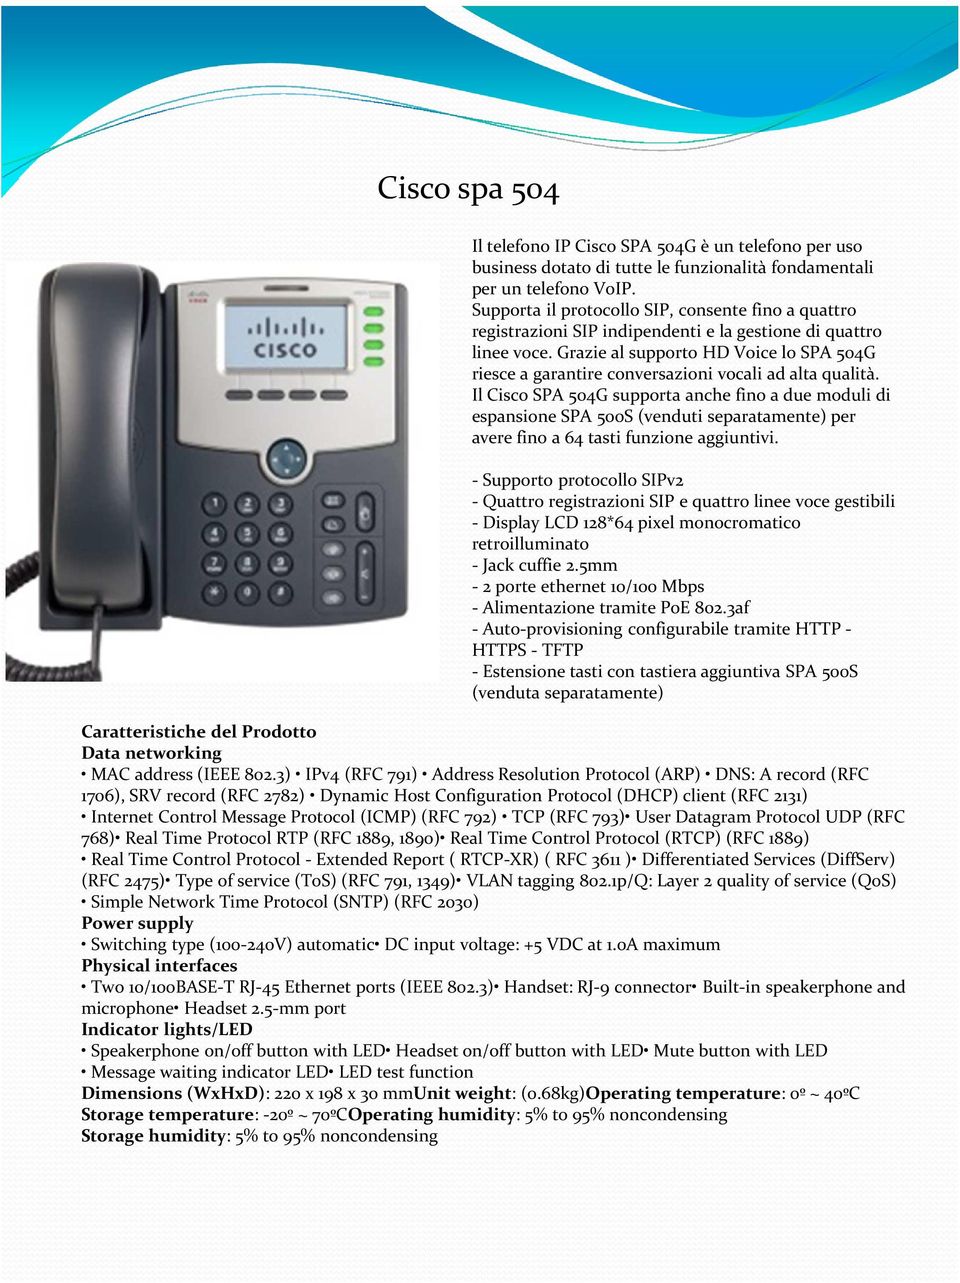 Grazie al supporto HD Voice lo SPA 504G riesce a garantire conversazioni vocali ad alta qualità.